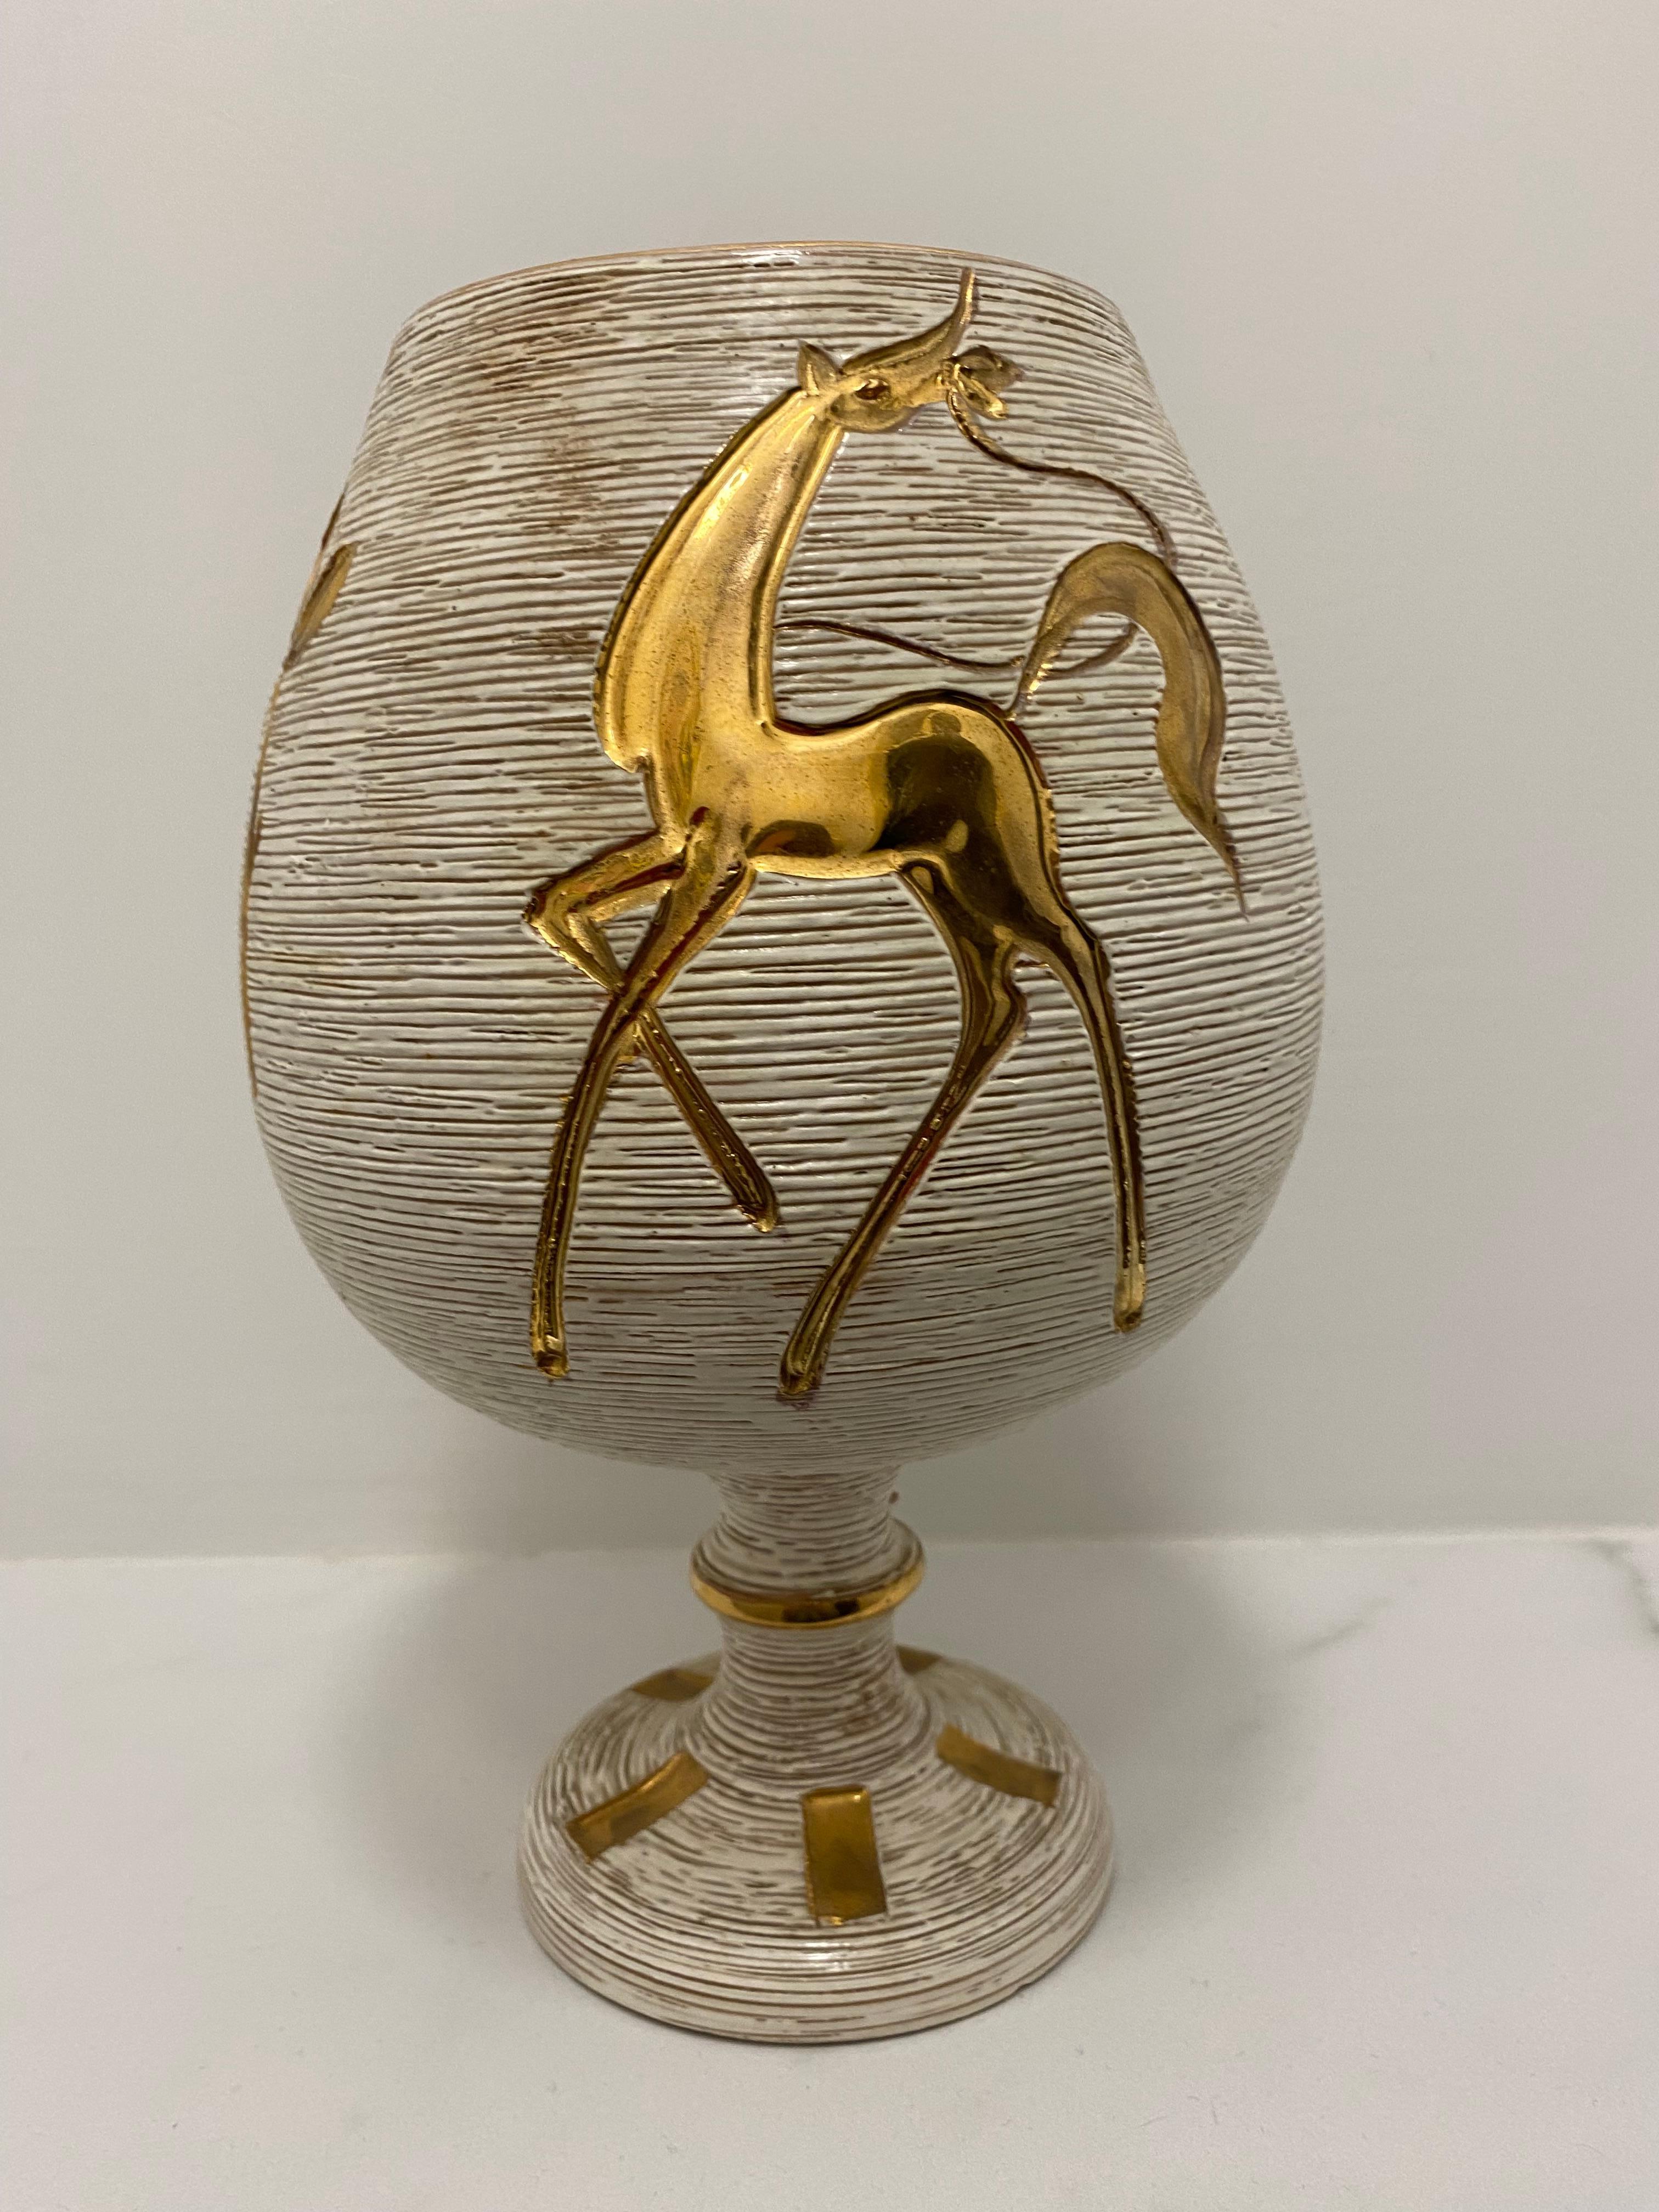 Étonnant et élégant vase de 26 cm de haut avec sgrafitto et motif doré brillant peint à la main.  Le motif du cheval est peint à l'avant et à l'arrière. Sur la base est peinte l'Italie 2101. 

Poterie Fratelli Fanciullacci : au cours de la première